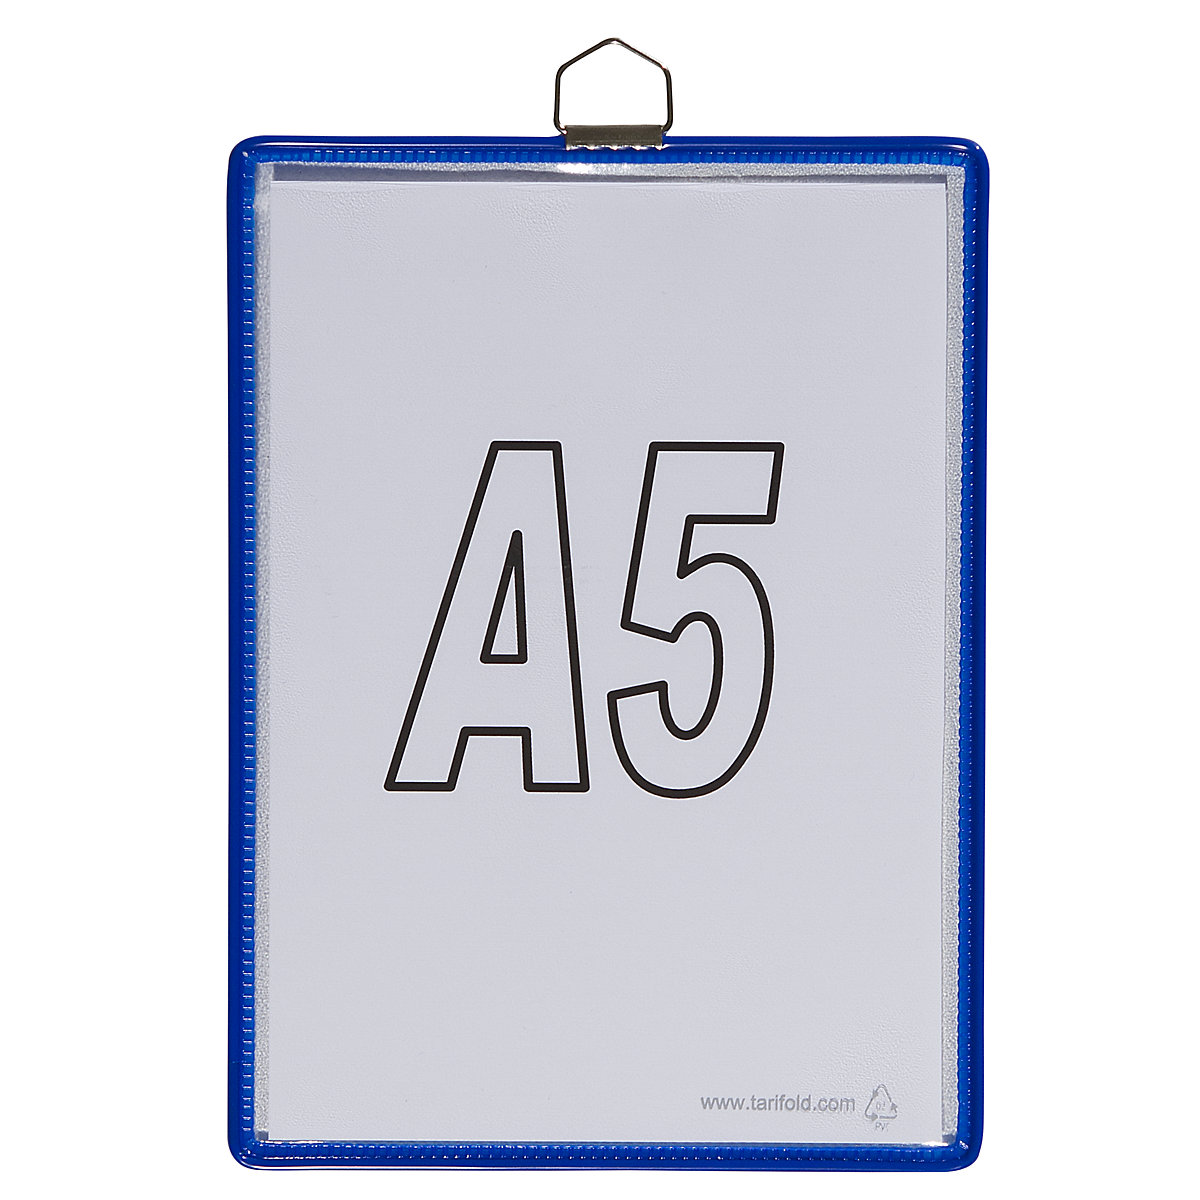 Bolsa transparente suspensa – Tarifold, para formato A5, azul, embalagem com 10 unidades-4